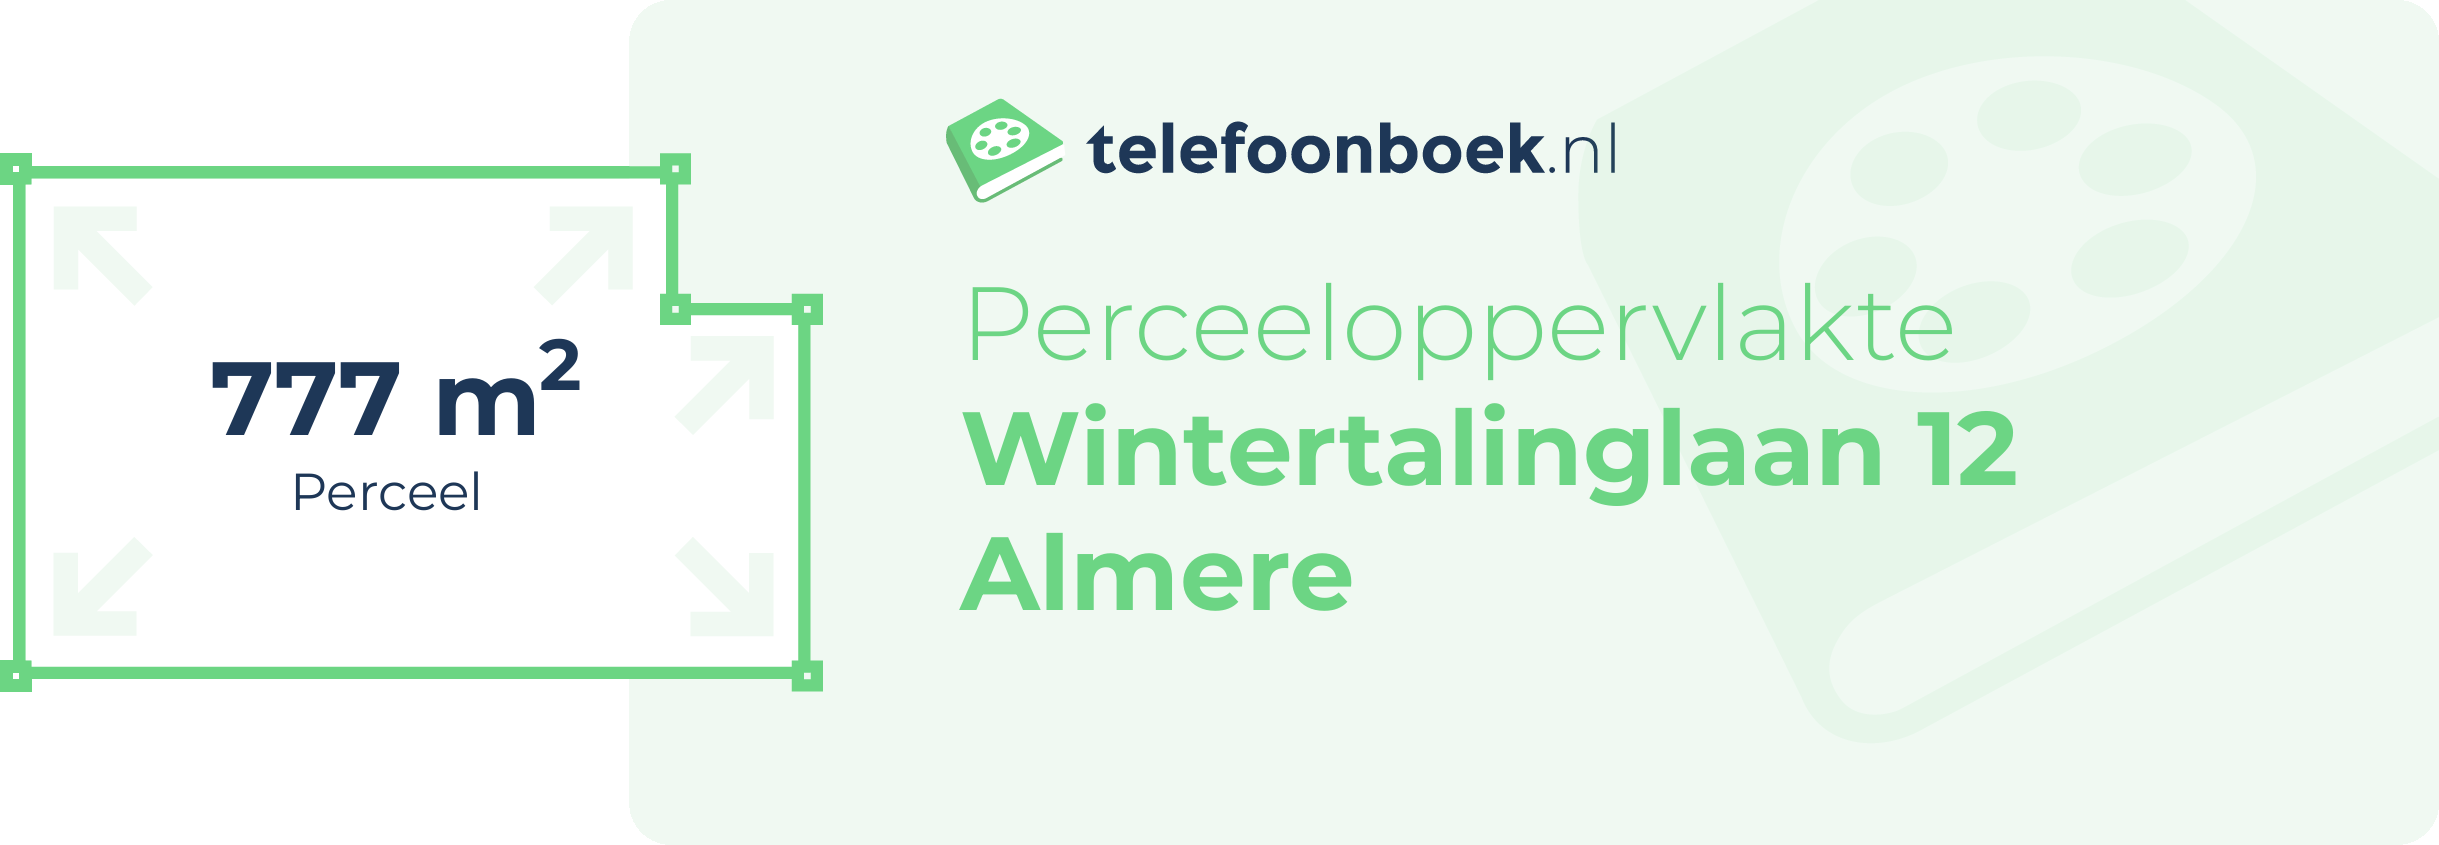 Perceeloppervlakte Wintertalinglaan 12 Almere